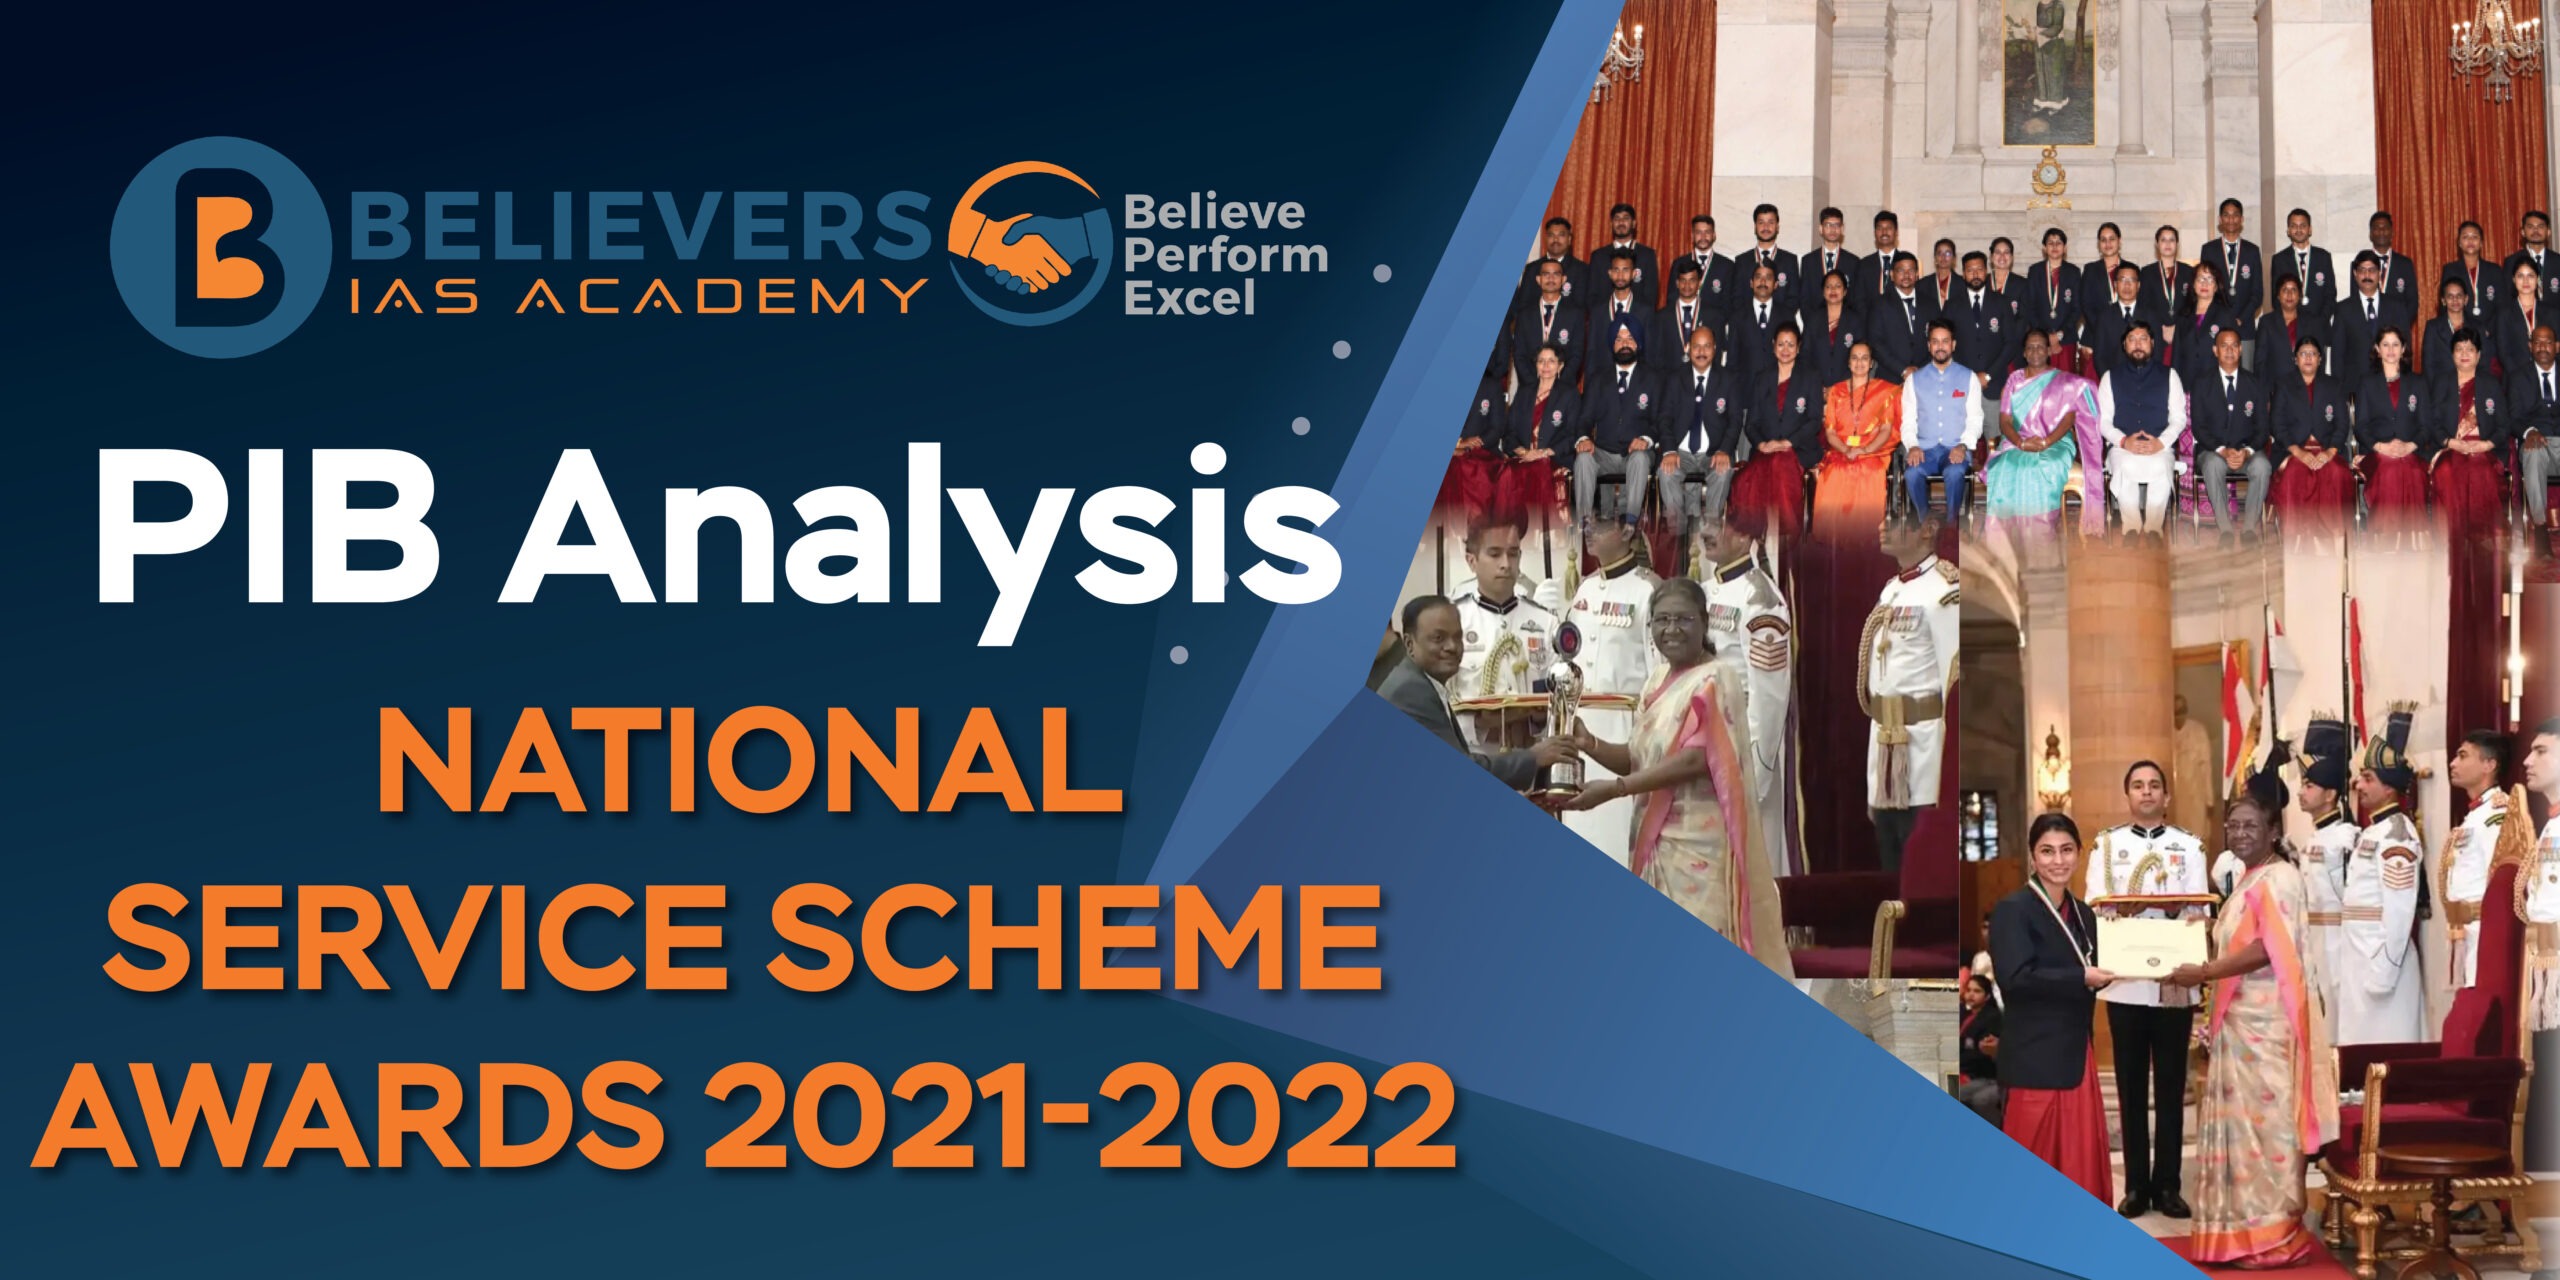 National Service Scheme Awards 2021-2022